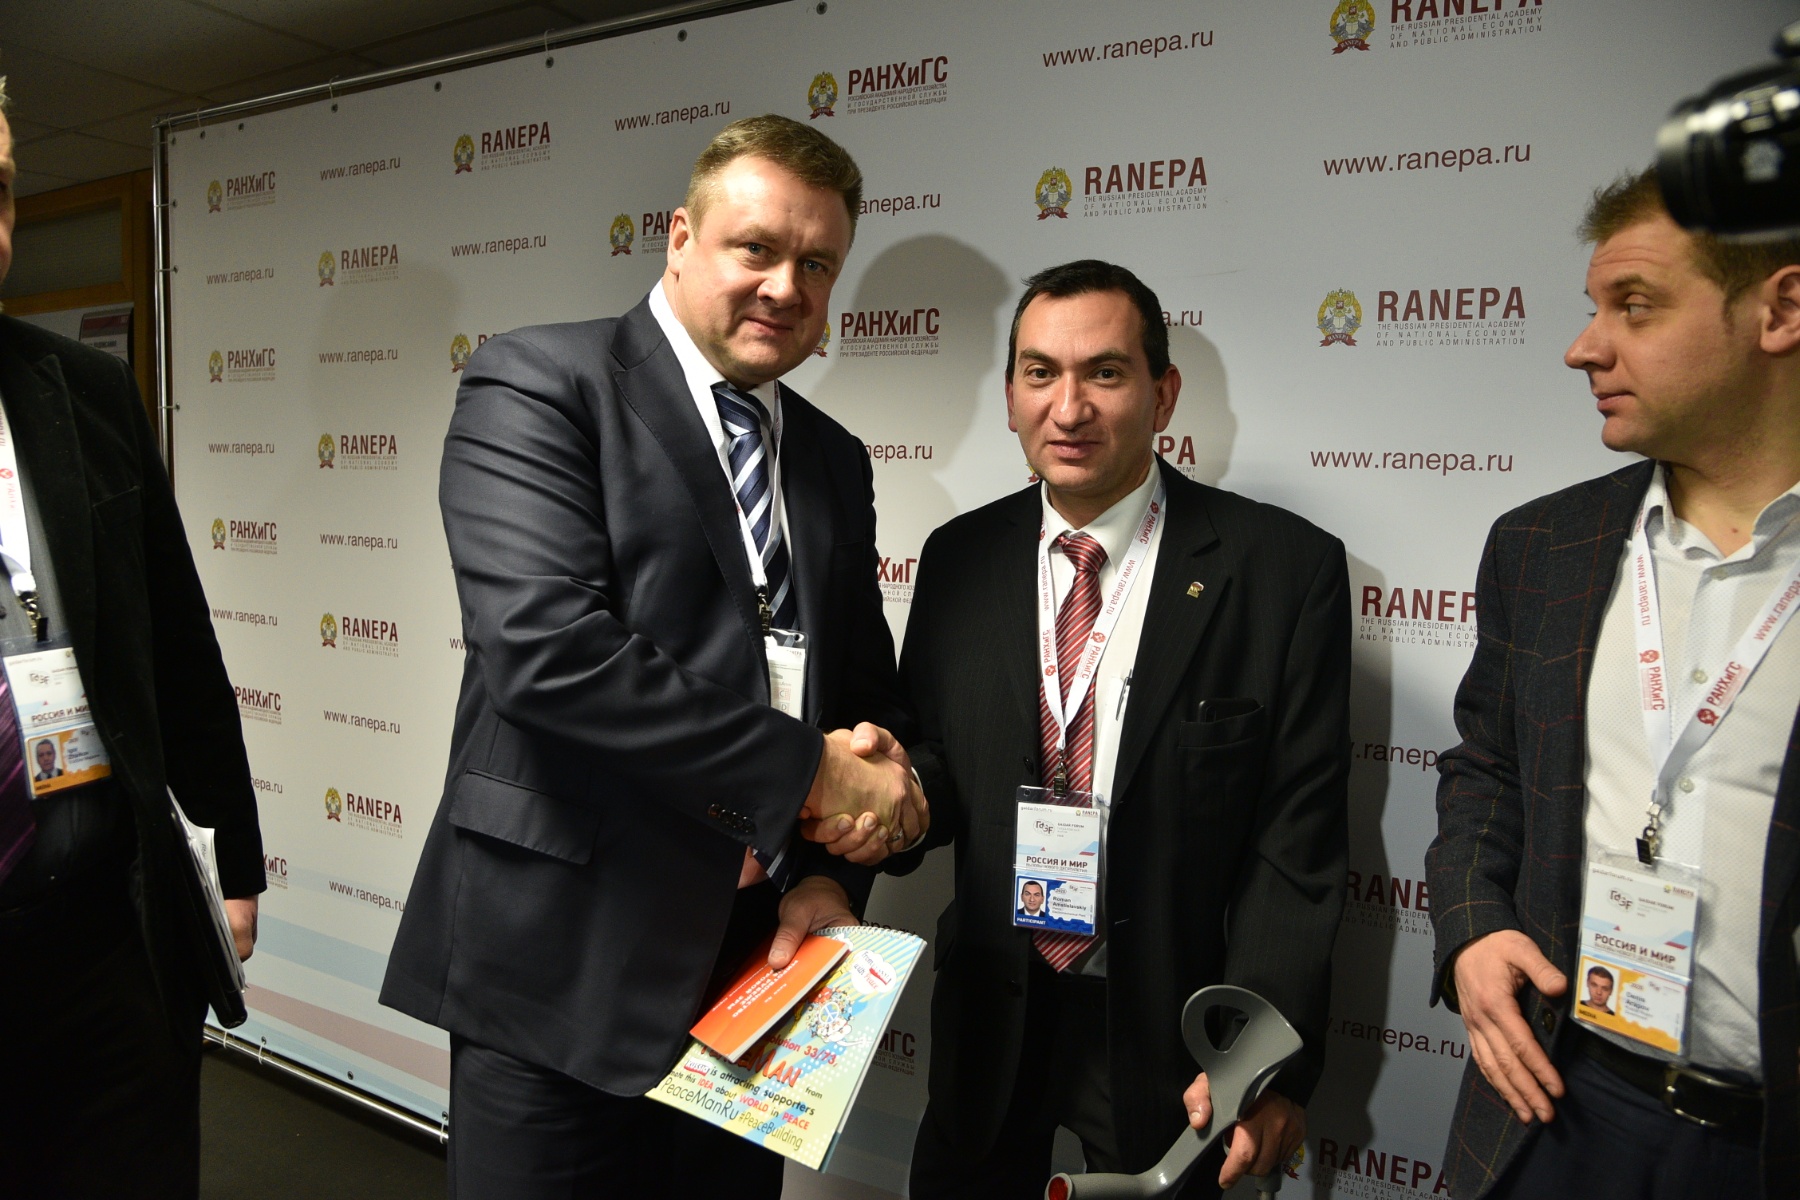 Роман Амстиславский: «На Гайдаровском форуме обсуждались важные для Пензенской области вопросы»